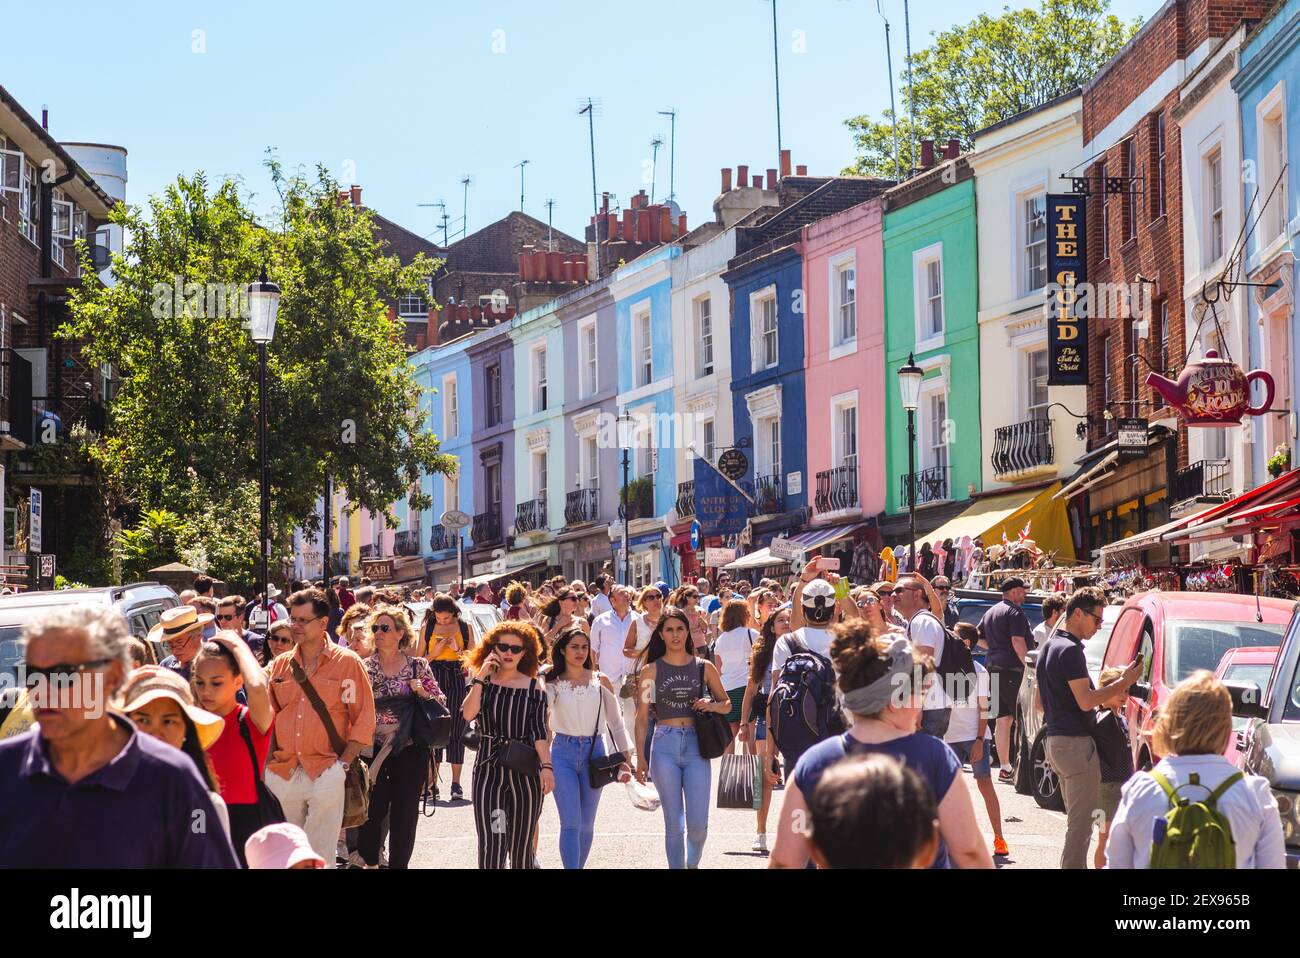 30 giugno 2018: Portobello Road Market, il più grande mercato di antiquariato del mondo situato a Hotting Hill, londra, Regno Unito, con oltre 1500 bancarelle che vendono ogni parente Foto Stock